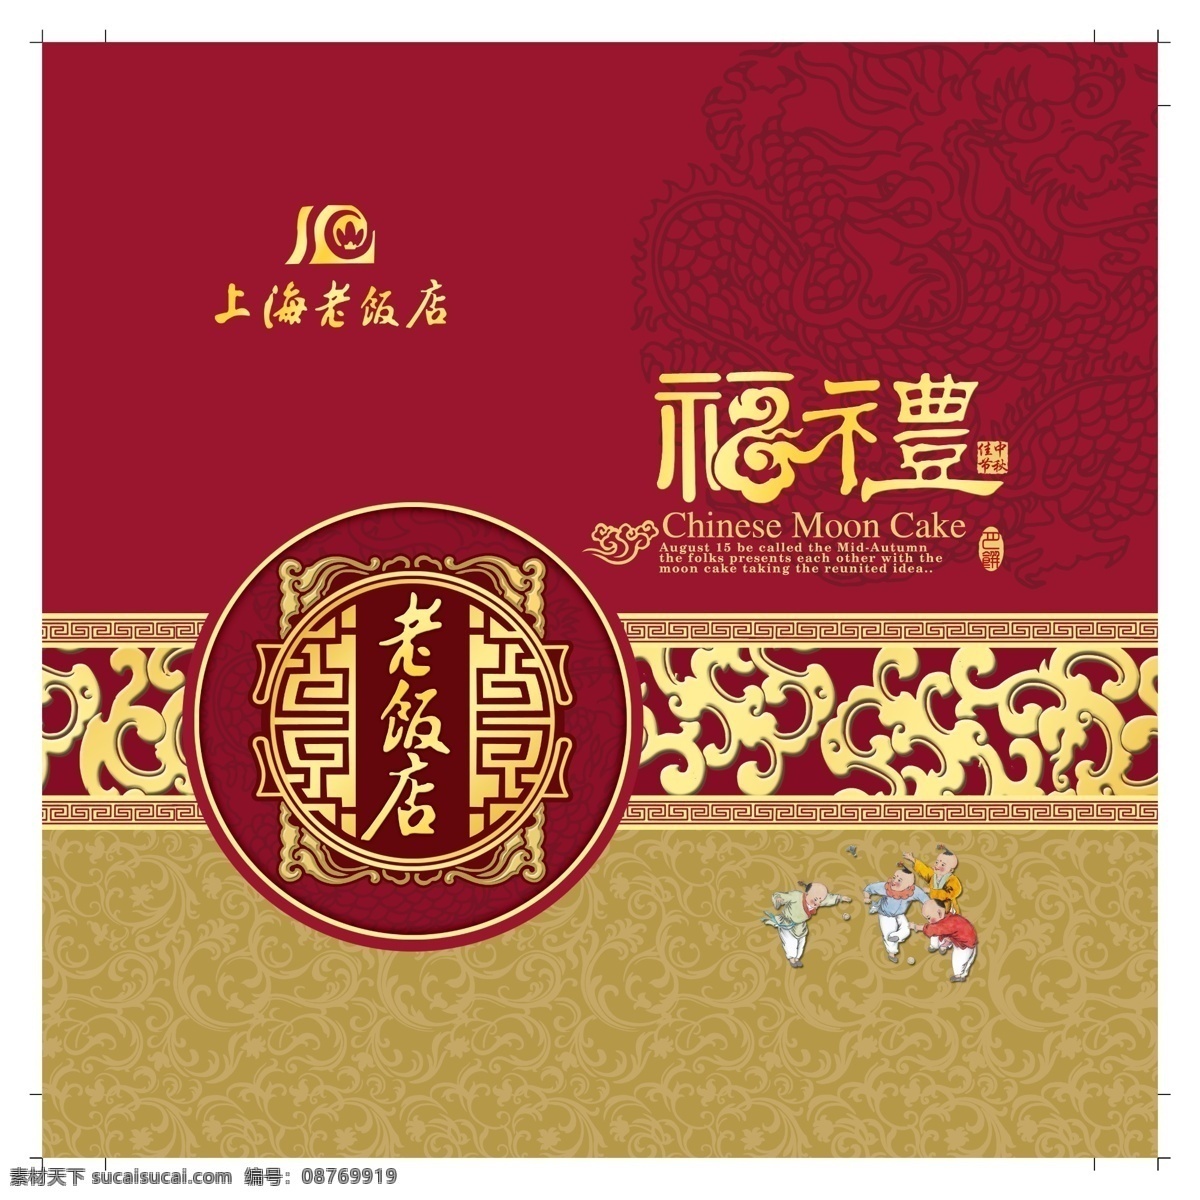 上海 老 饭店 礼盒 中国风礼盒 包装 中式花纹 广告 海报